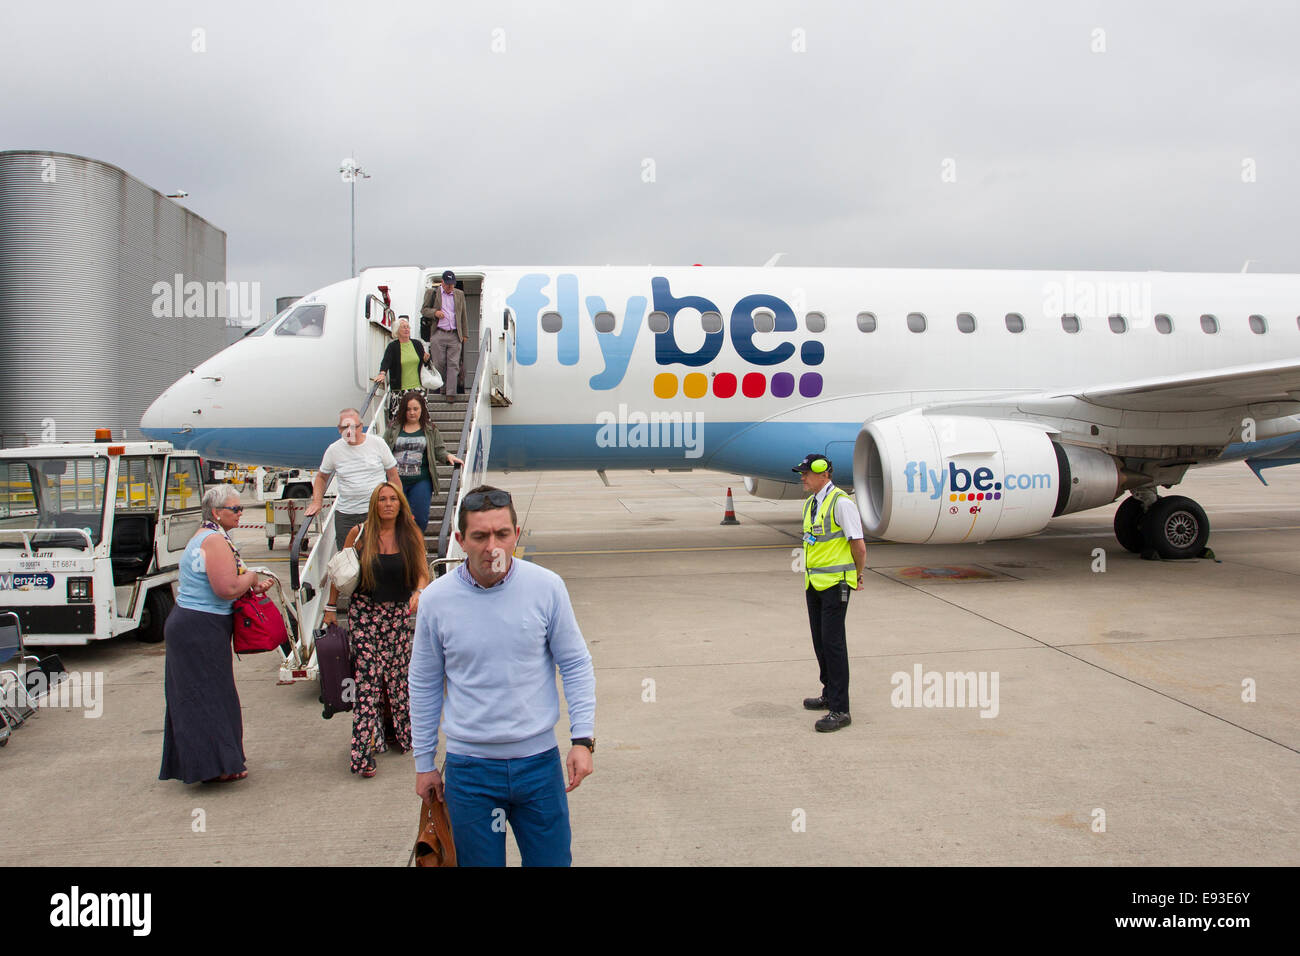 Flybe-Anreise - Ankunft am Flughafen von Manchester Stockfoto